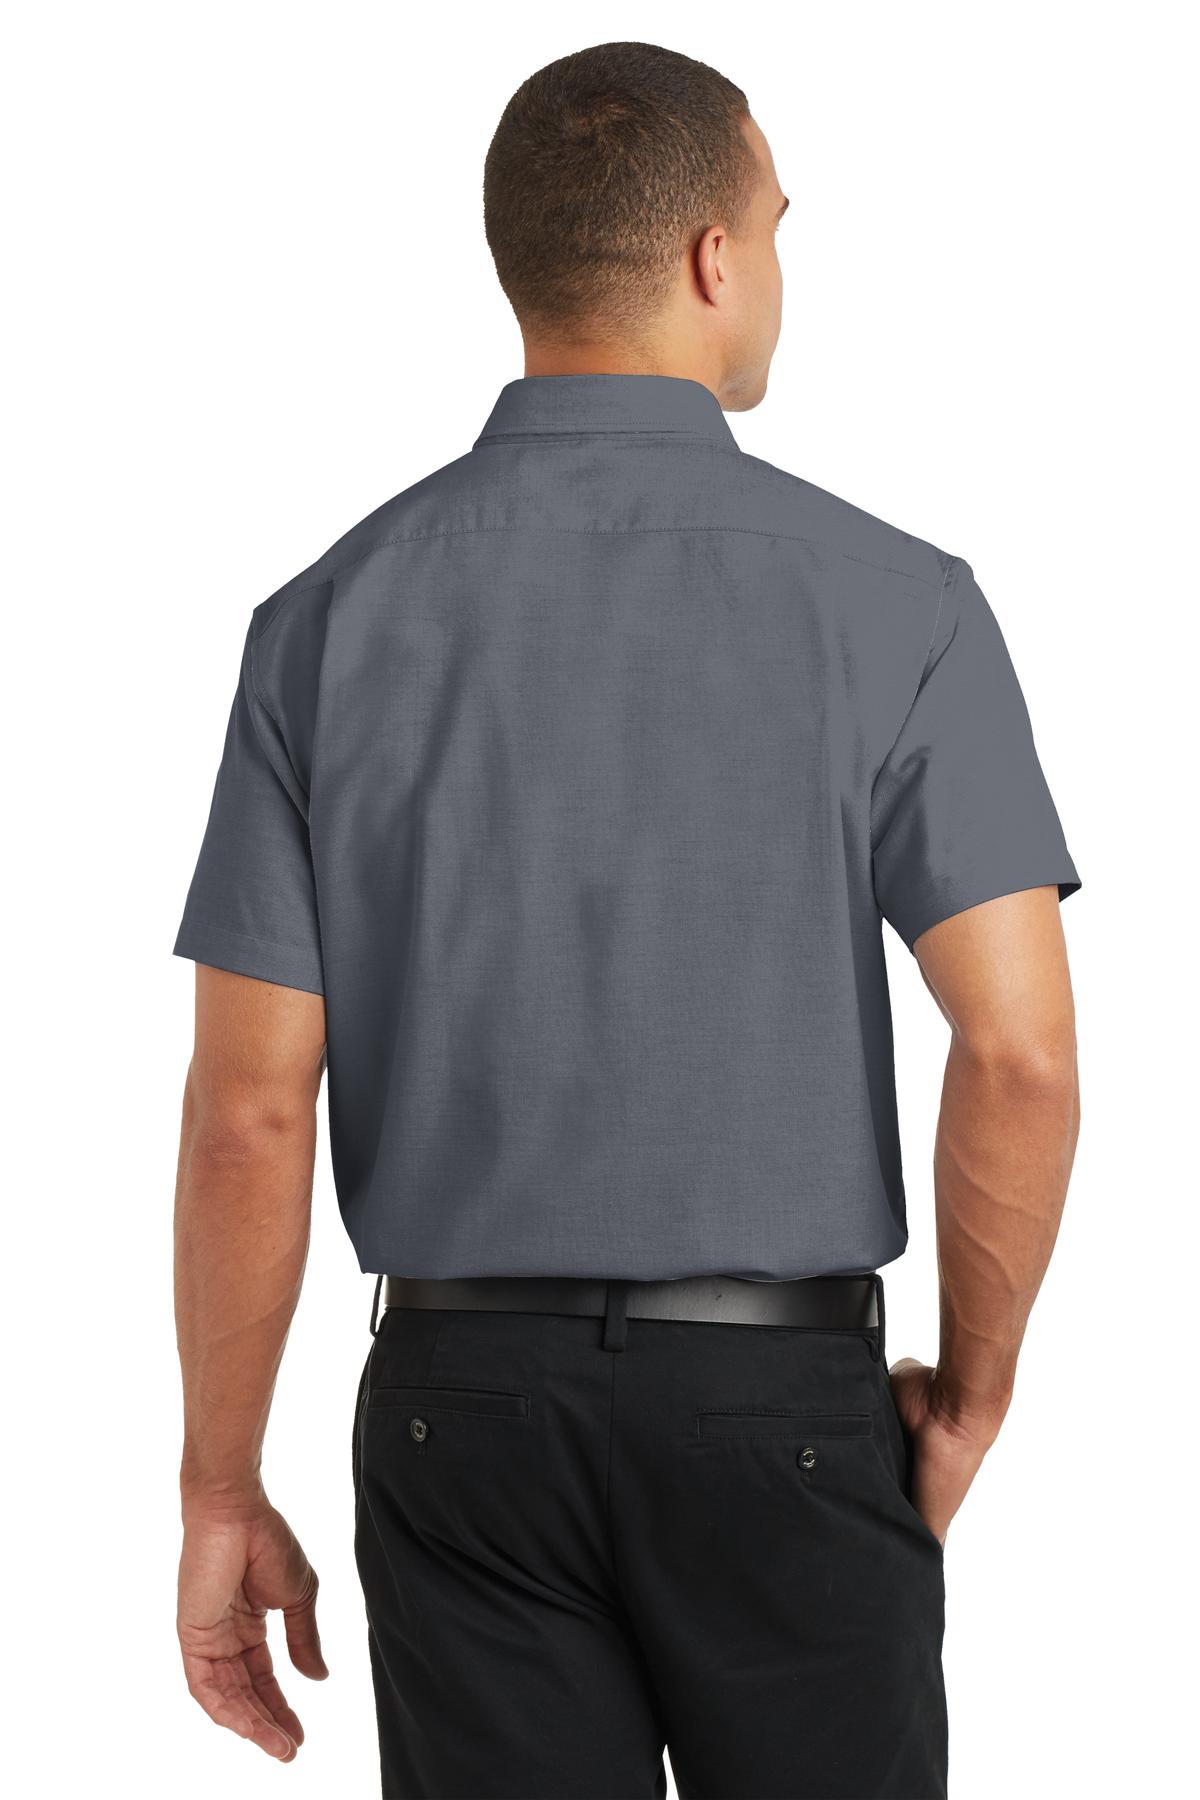 Port Authority Short Sleeve SuperPro Oxford Shirt-2XL (Black) - image 2 of 6